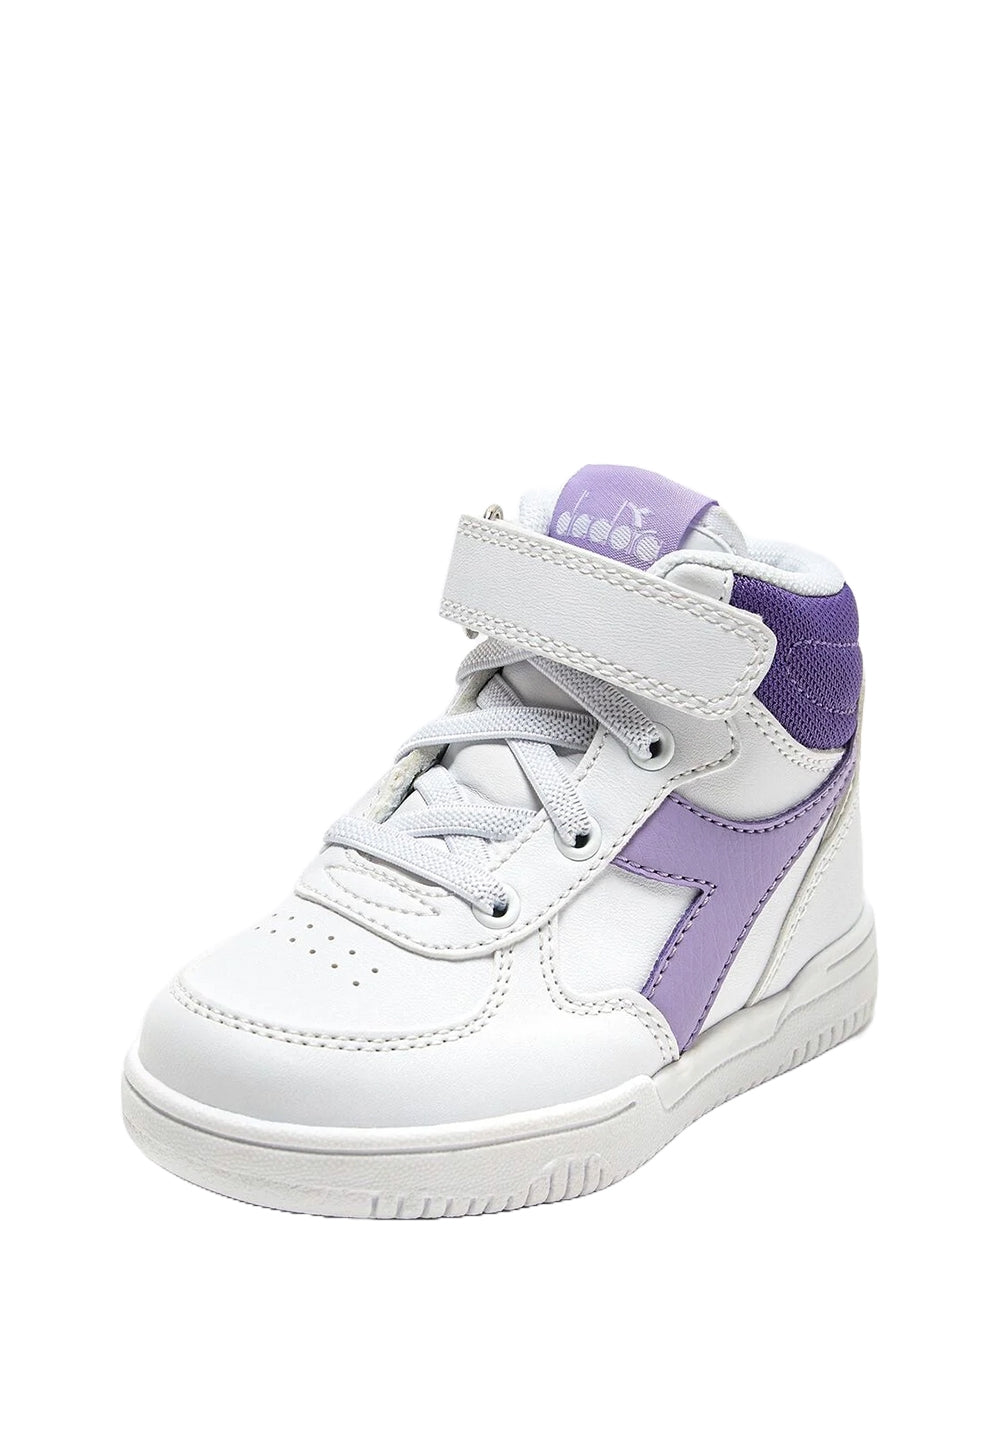 Scarpe bianco-viola per neonata